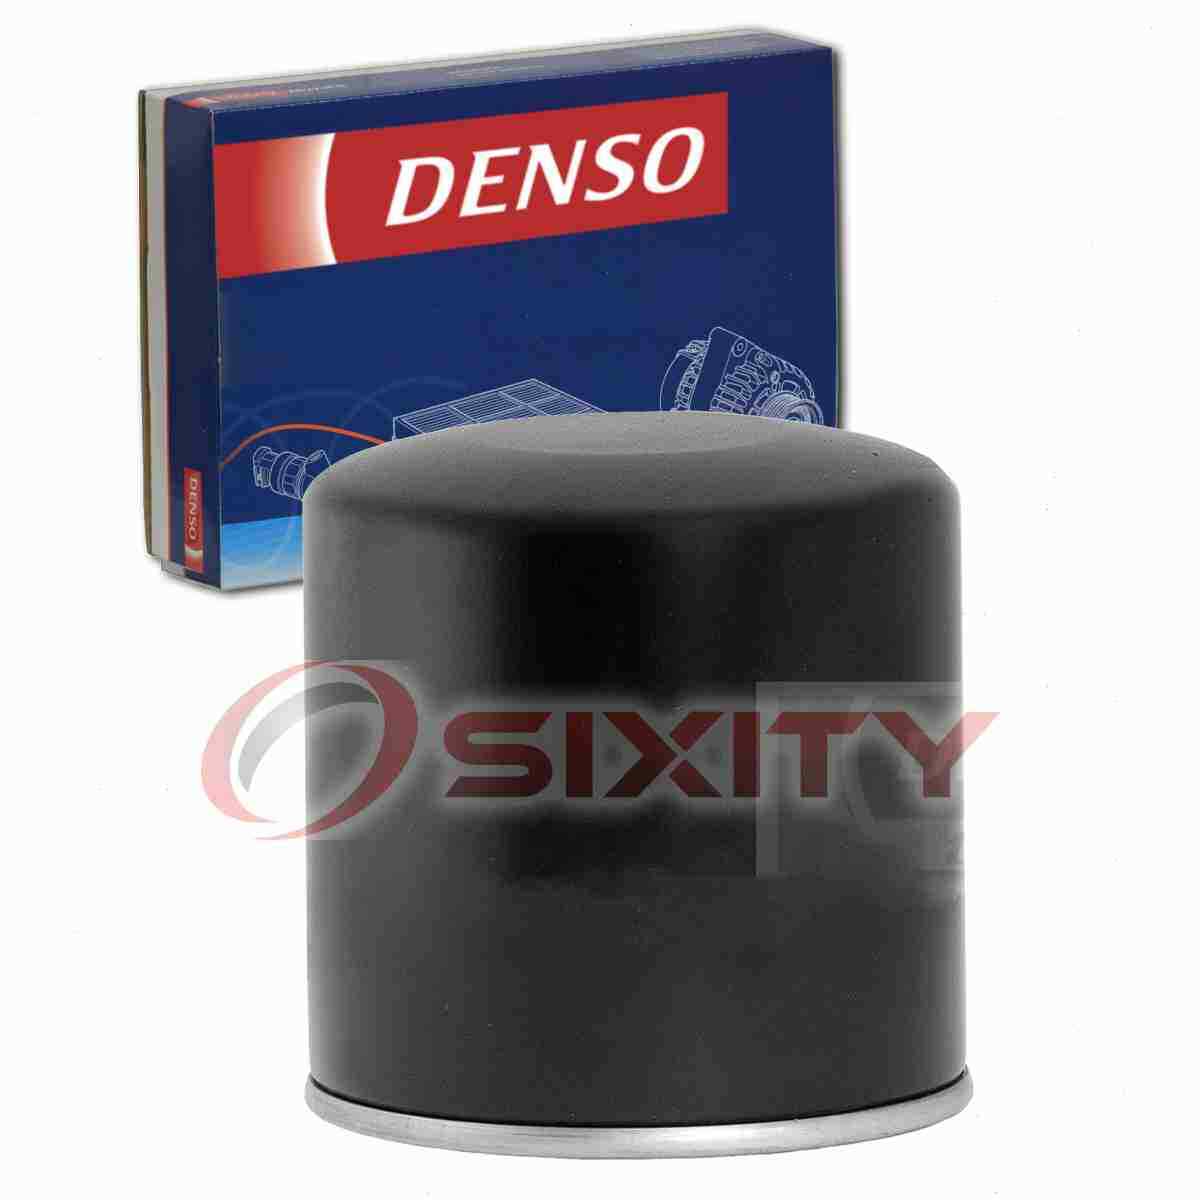 Denso Engine Oil Filter for 2011-2013 Ram 1500 4.7L 5.7L V8 Oil Change cs 2013 Ram 1500 5.7 Oil Filter